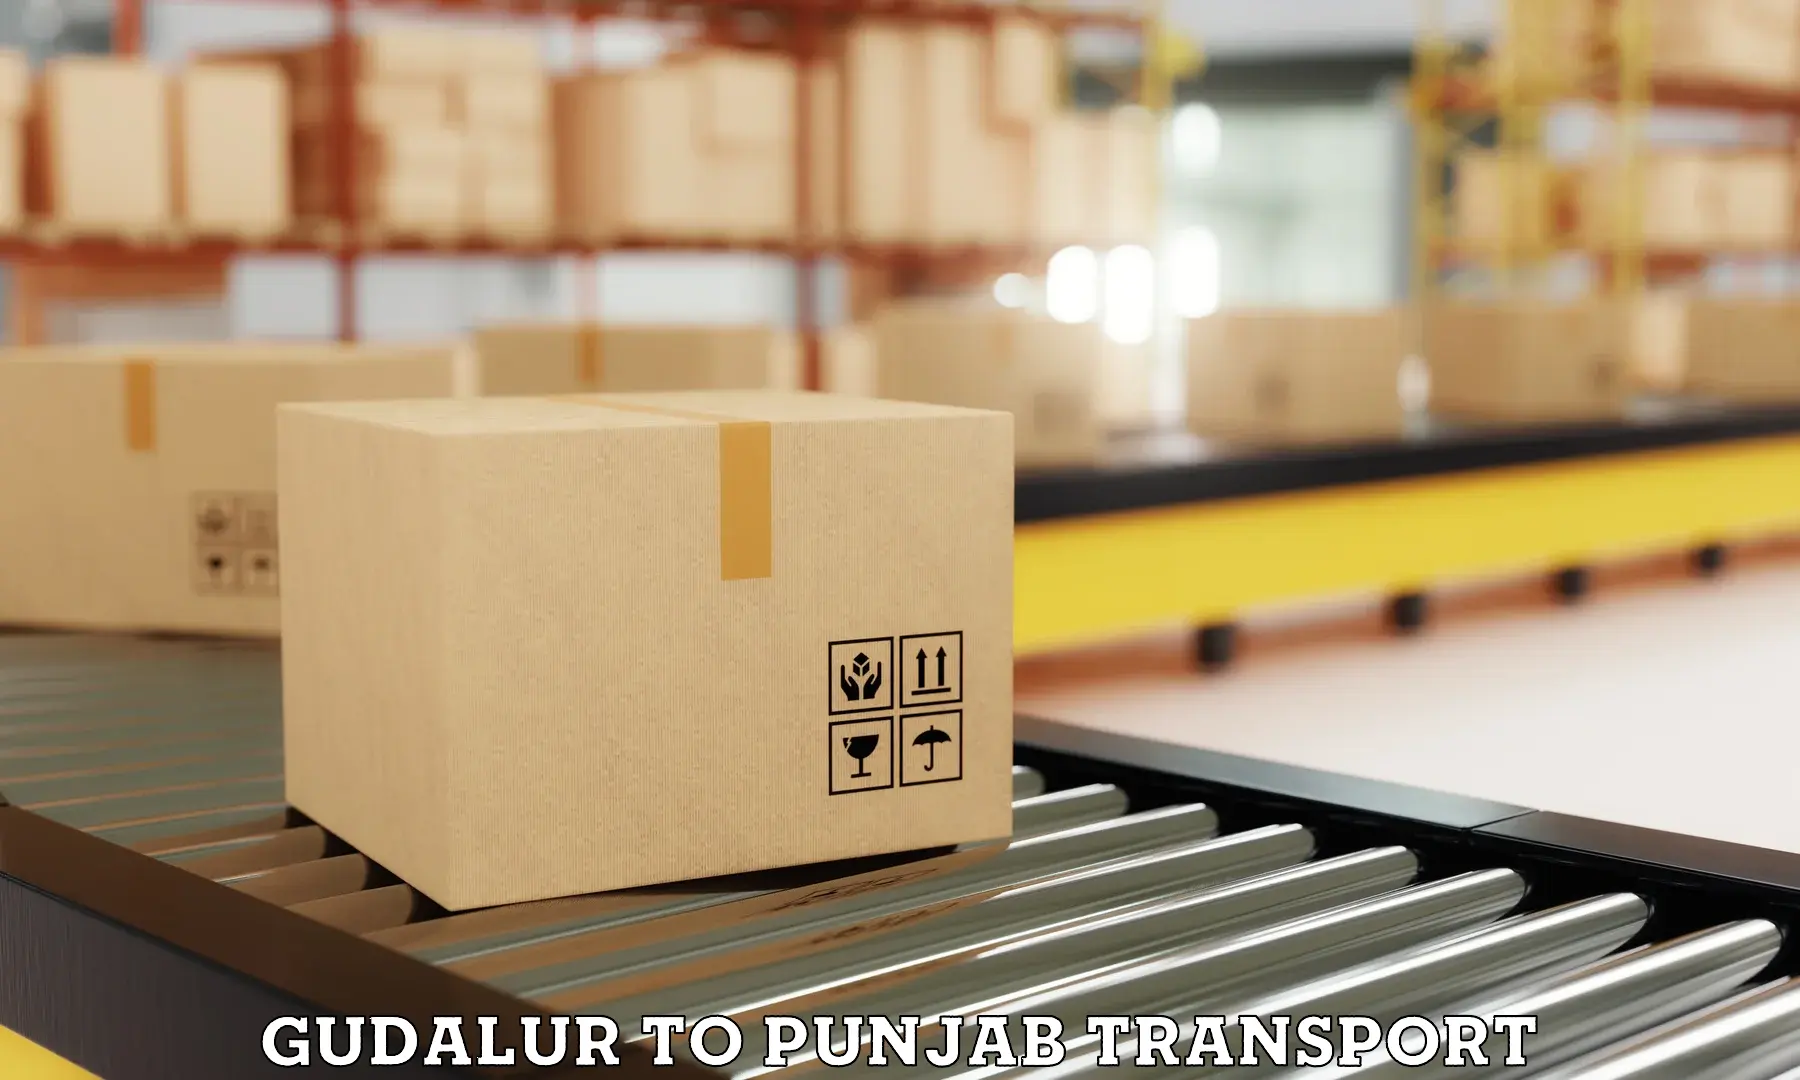 International cargo transportation services Gudalur to Amritsar